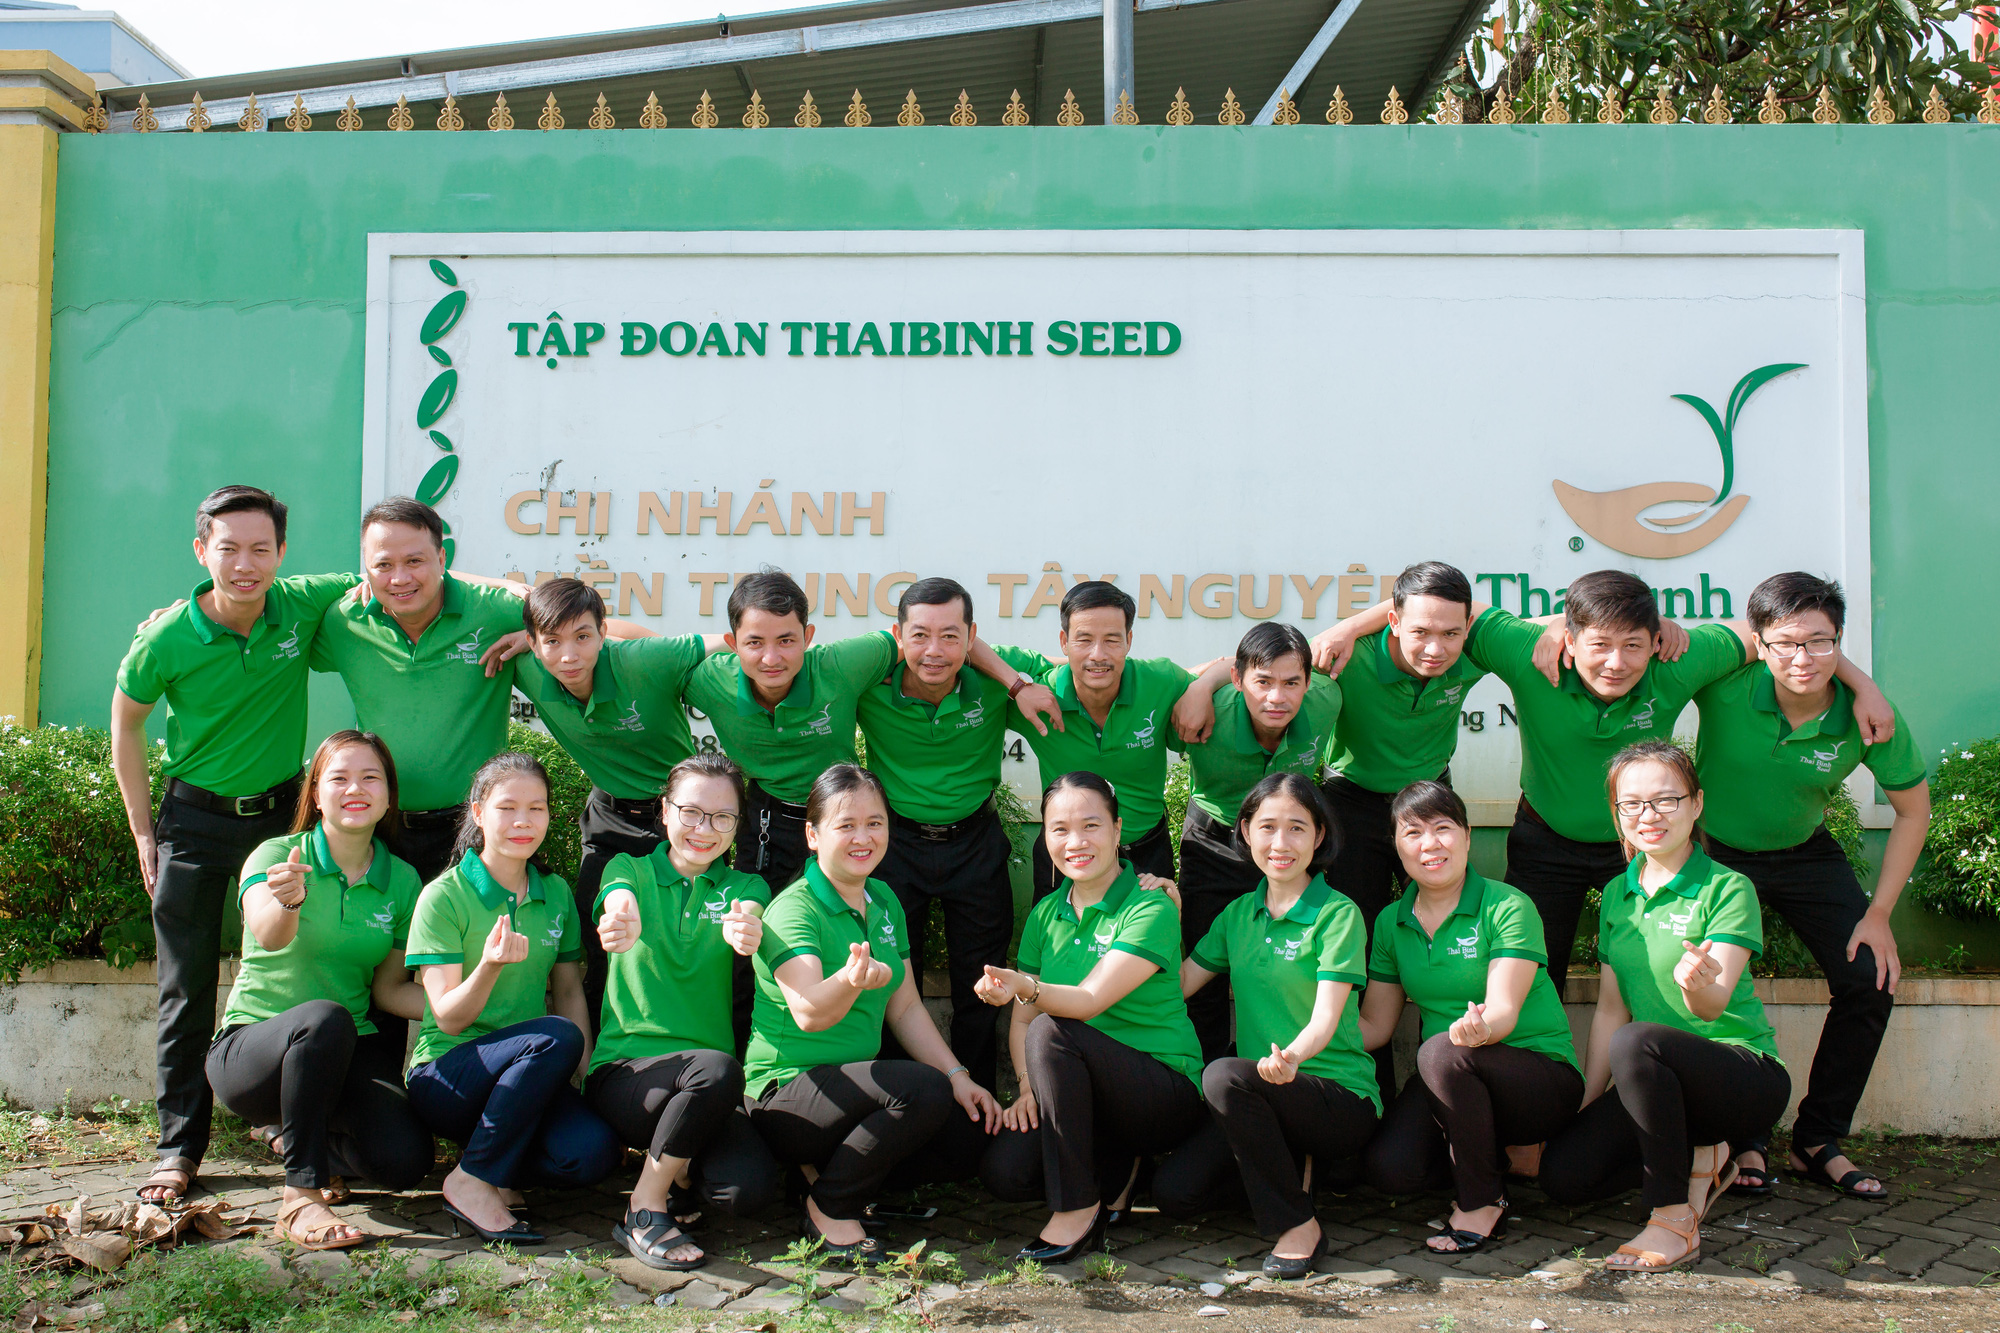 ThaiBinh Seed hành trình ghi nhận dấu ấn tại miền Trung - Tây Nguyên - Ảnh 5.